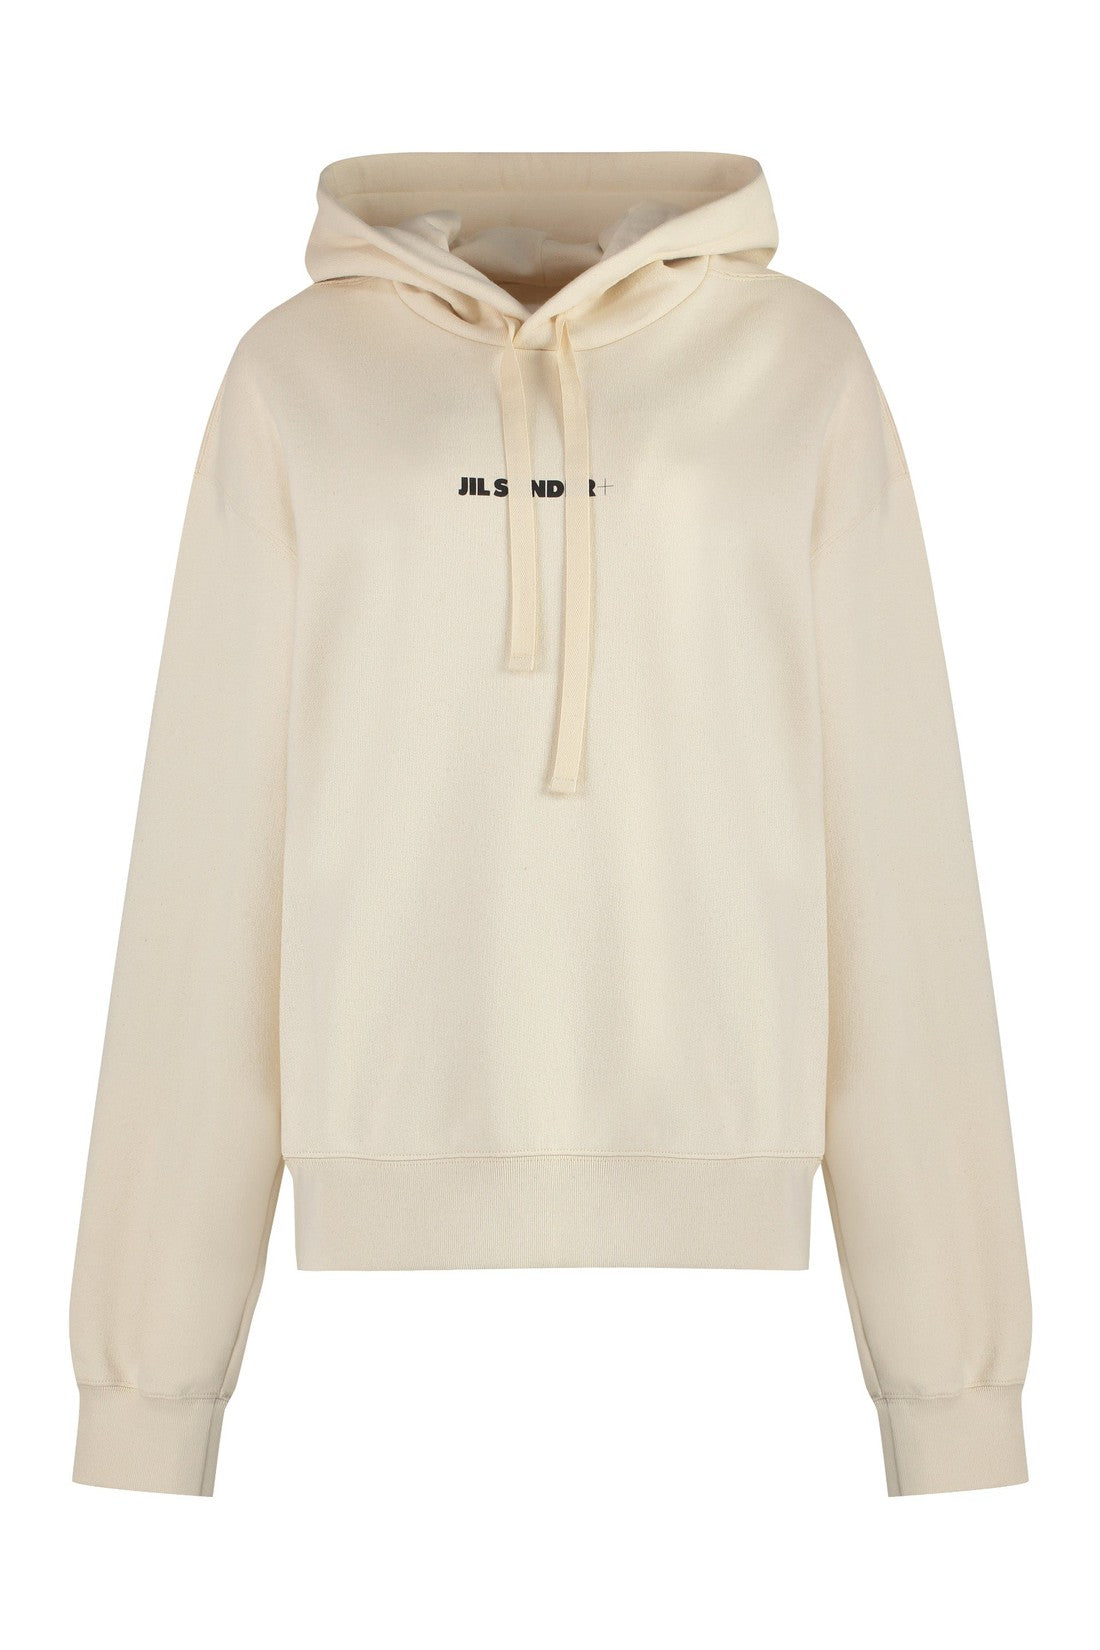 Jil Sander-OUTLET-SALE-Logo cotton hoodie-ARCHIVIST